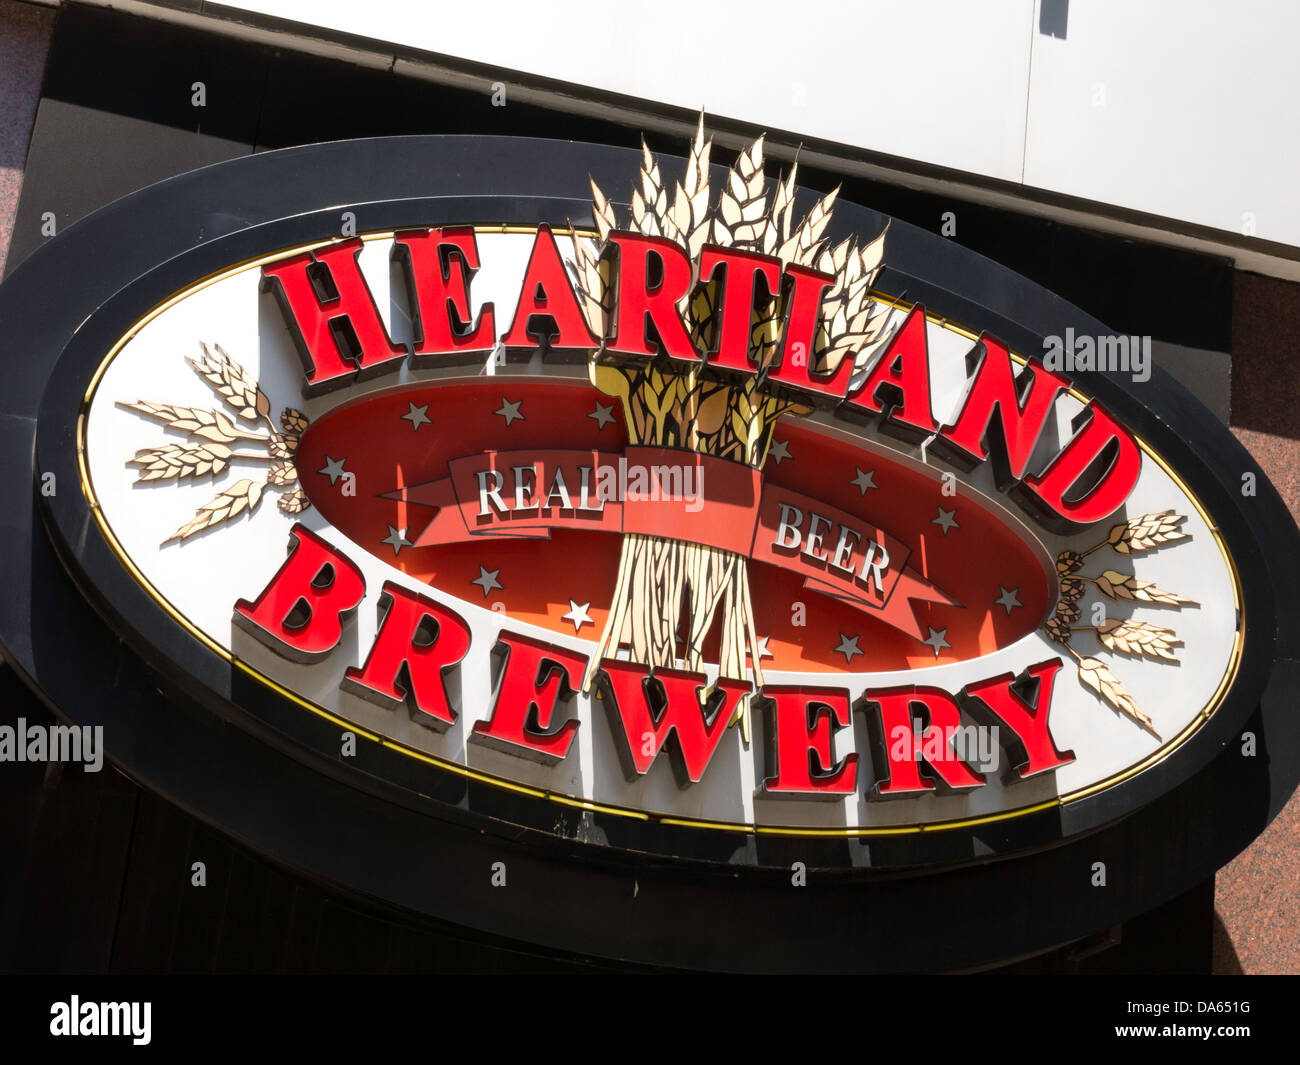 Heartland Brewery Restaurant Facade Sign, NYC Stock Photo